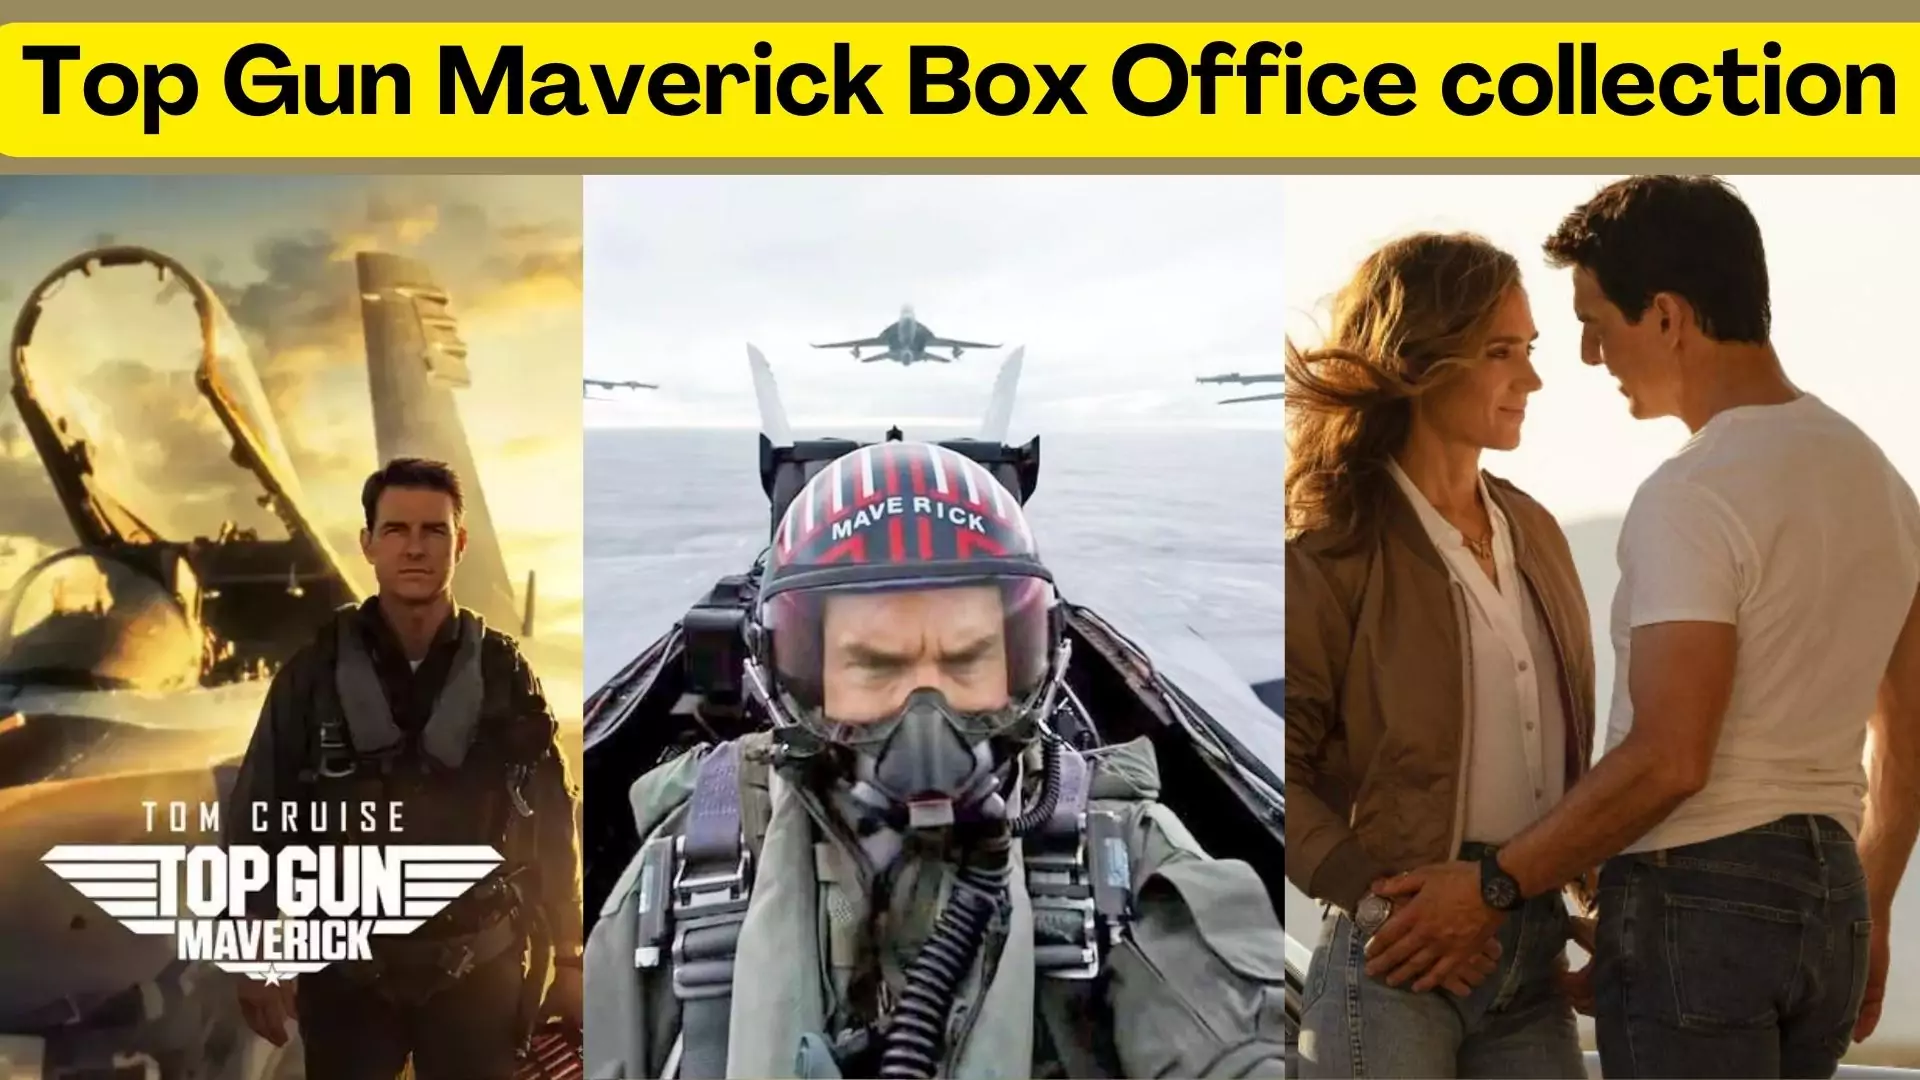 Top Gun Maverick Box Office collection